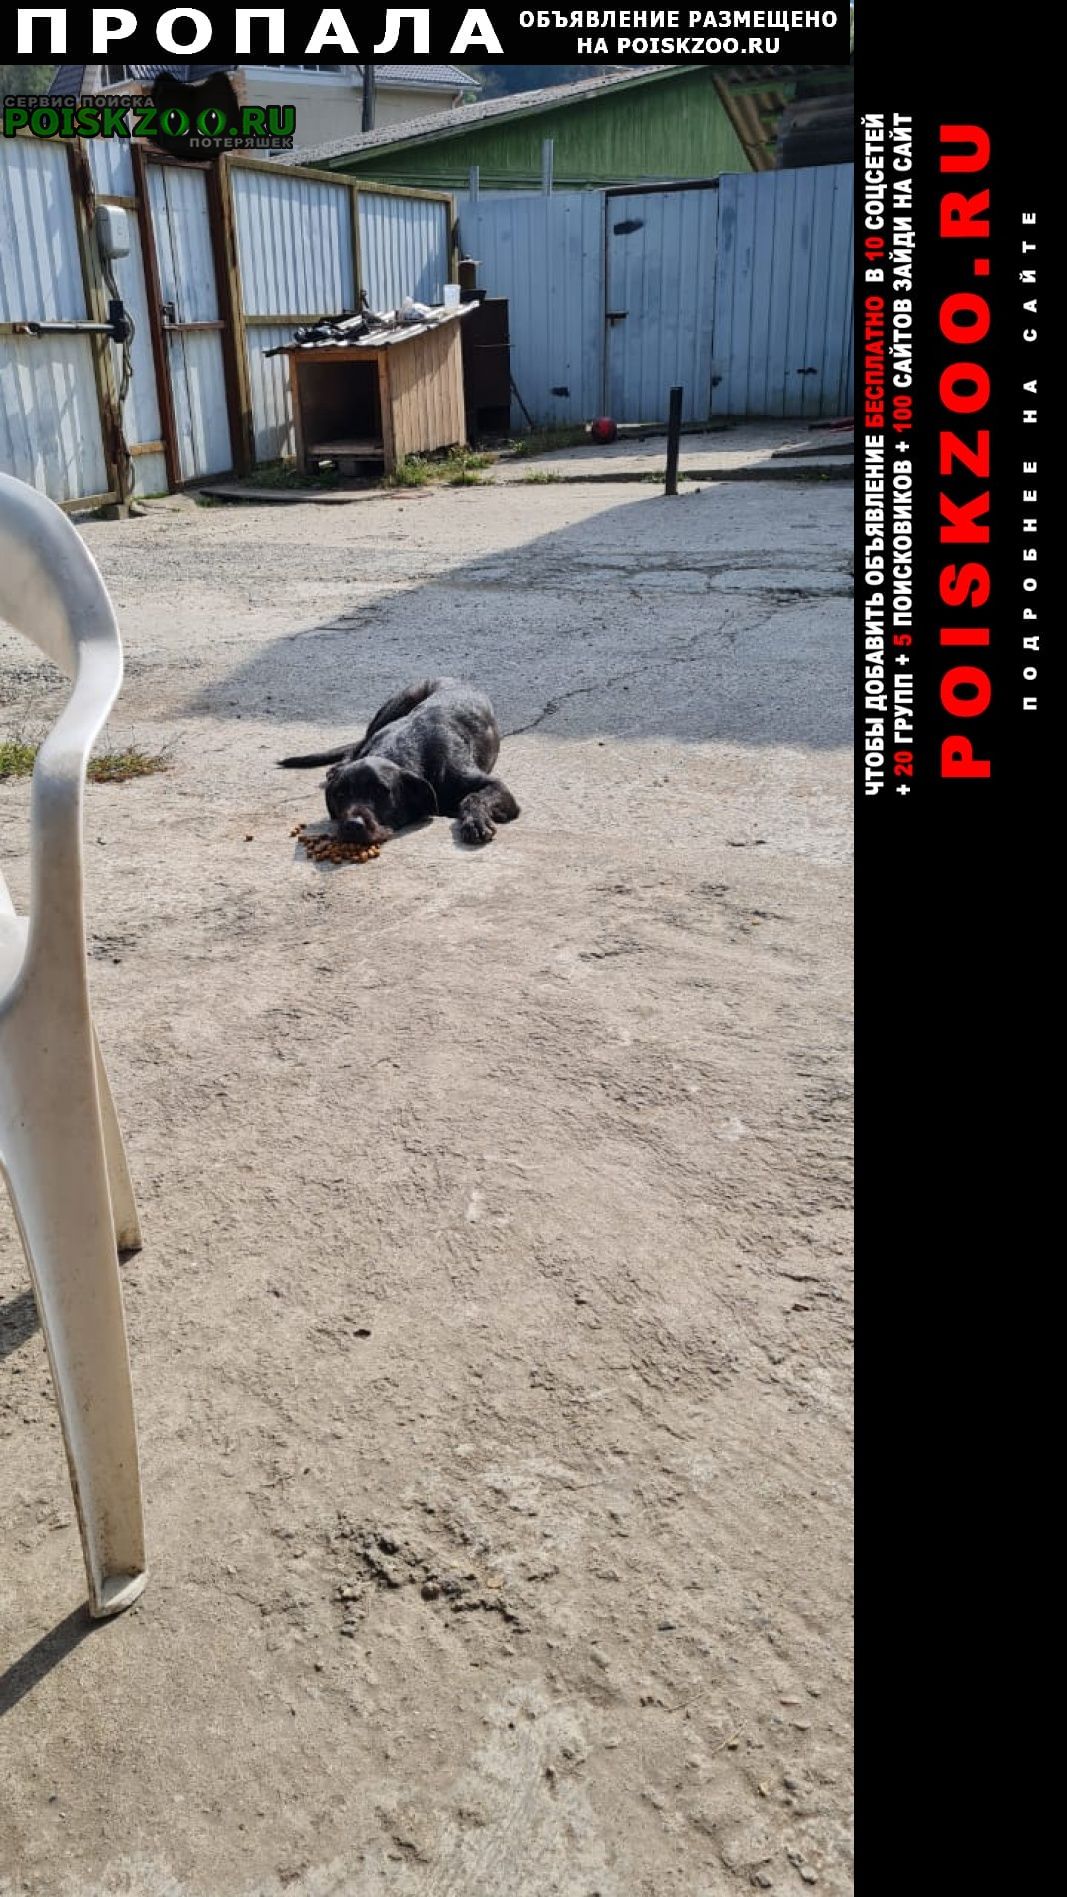 Пропала собака кобель 1 января Сочи